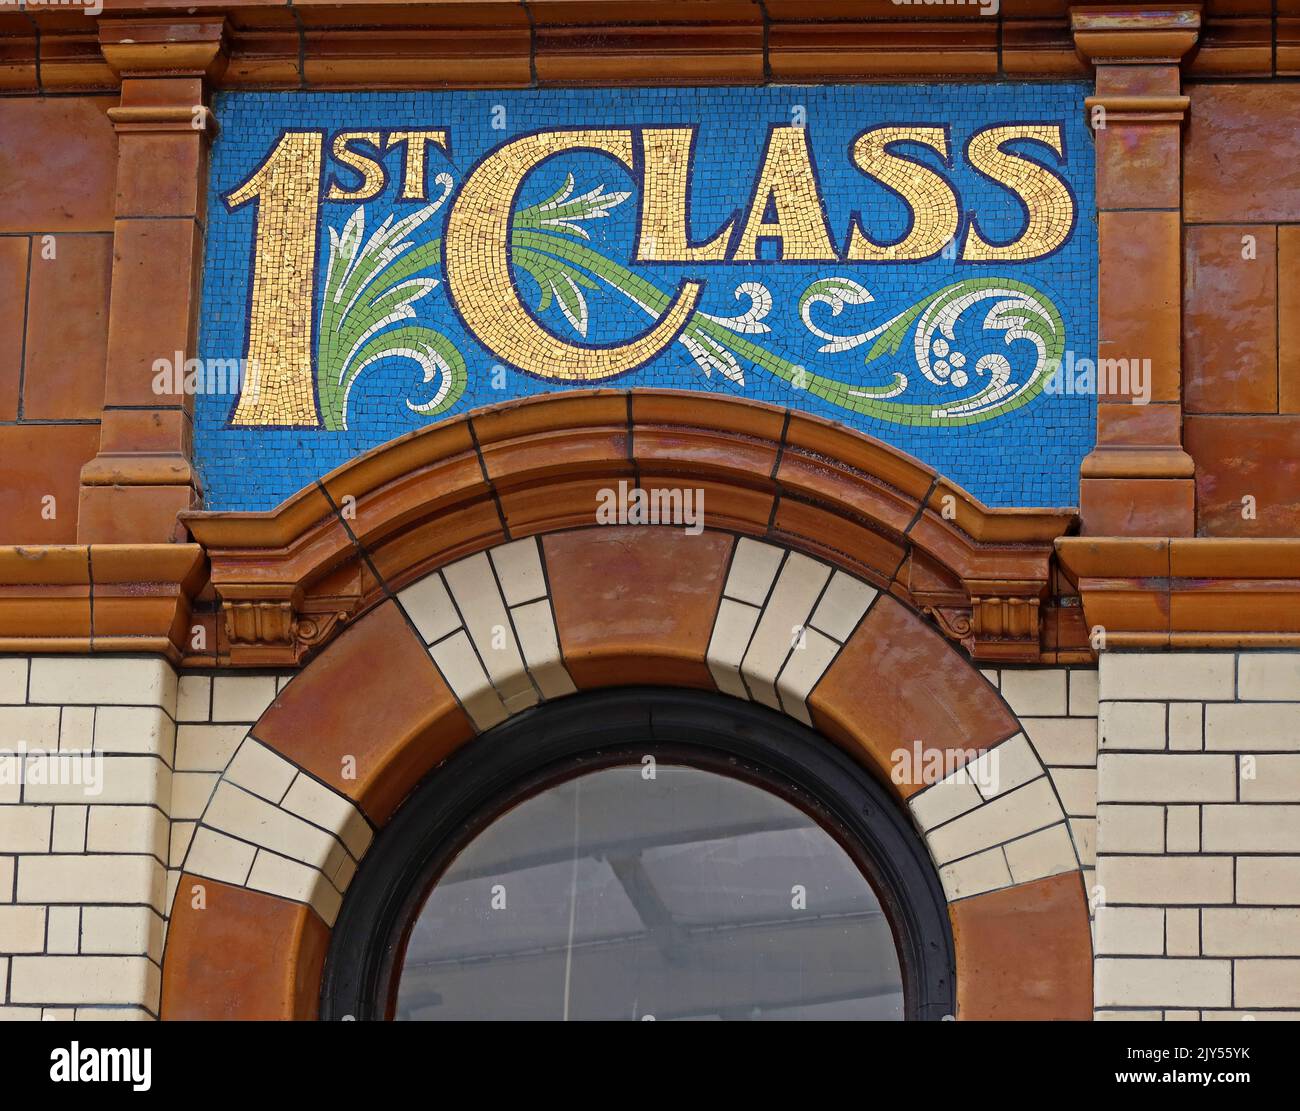 Victoria Station Manchester, ristorante con scritte a mosaico, libreria con decorazioni a mosaico, prima classe Foto Stock